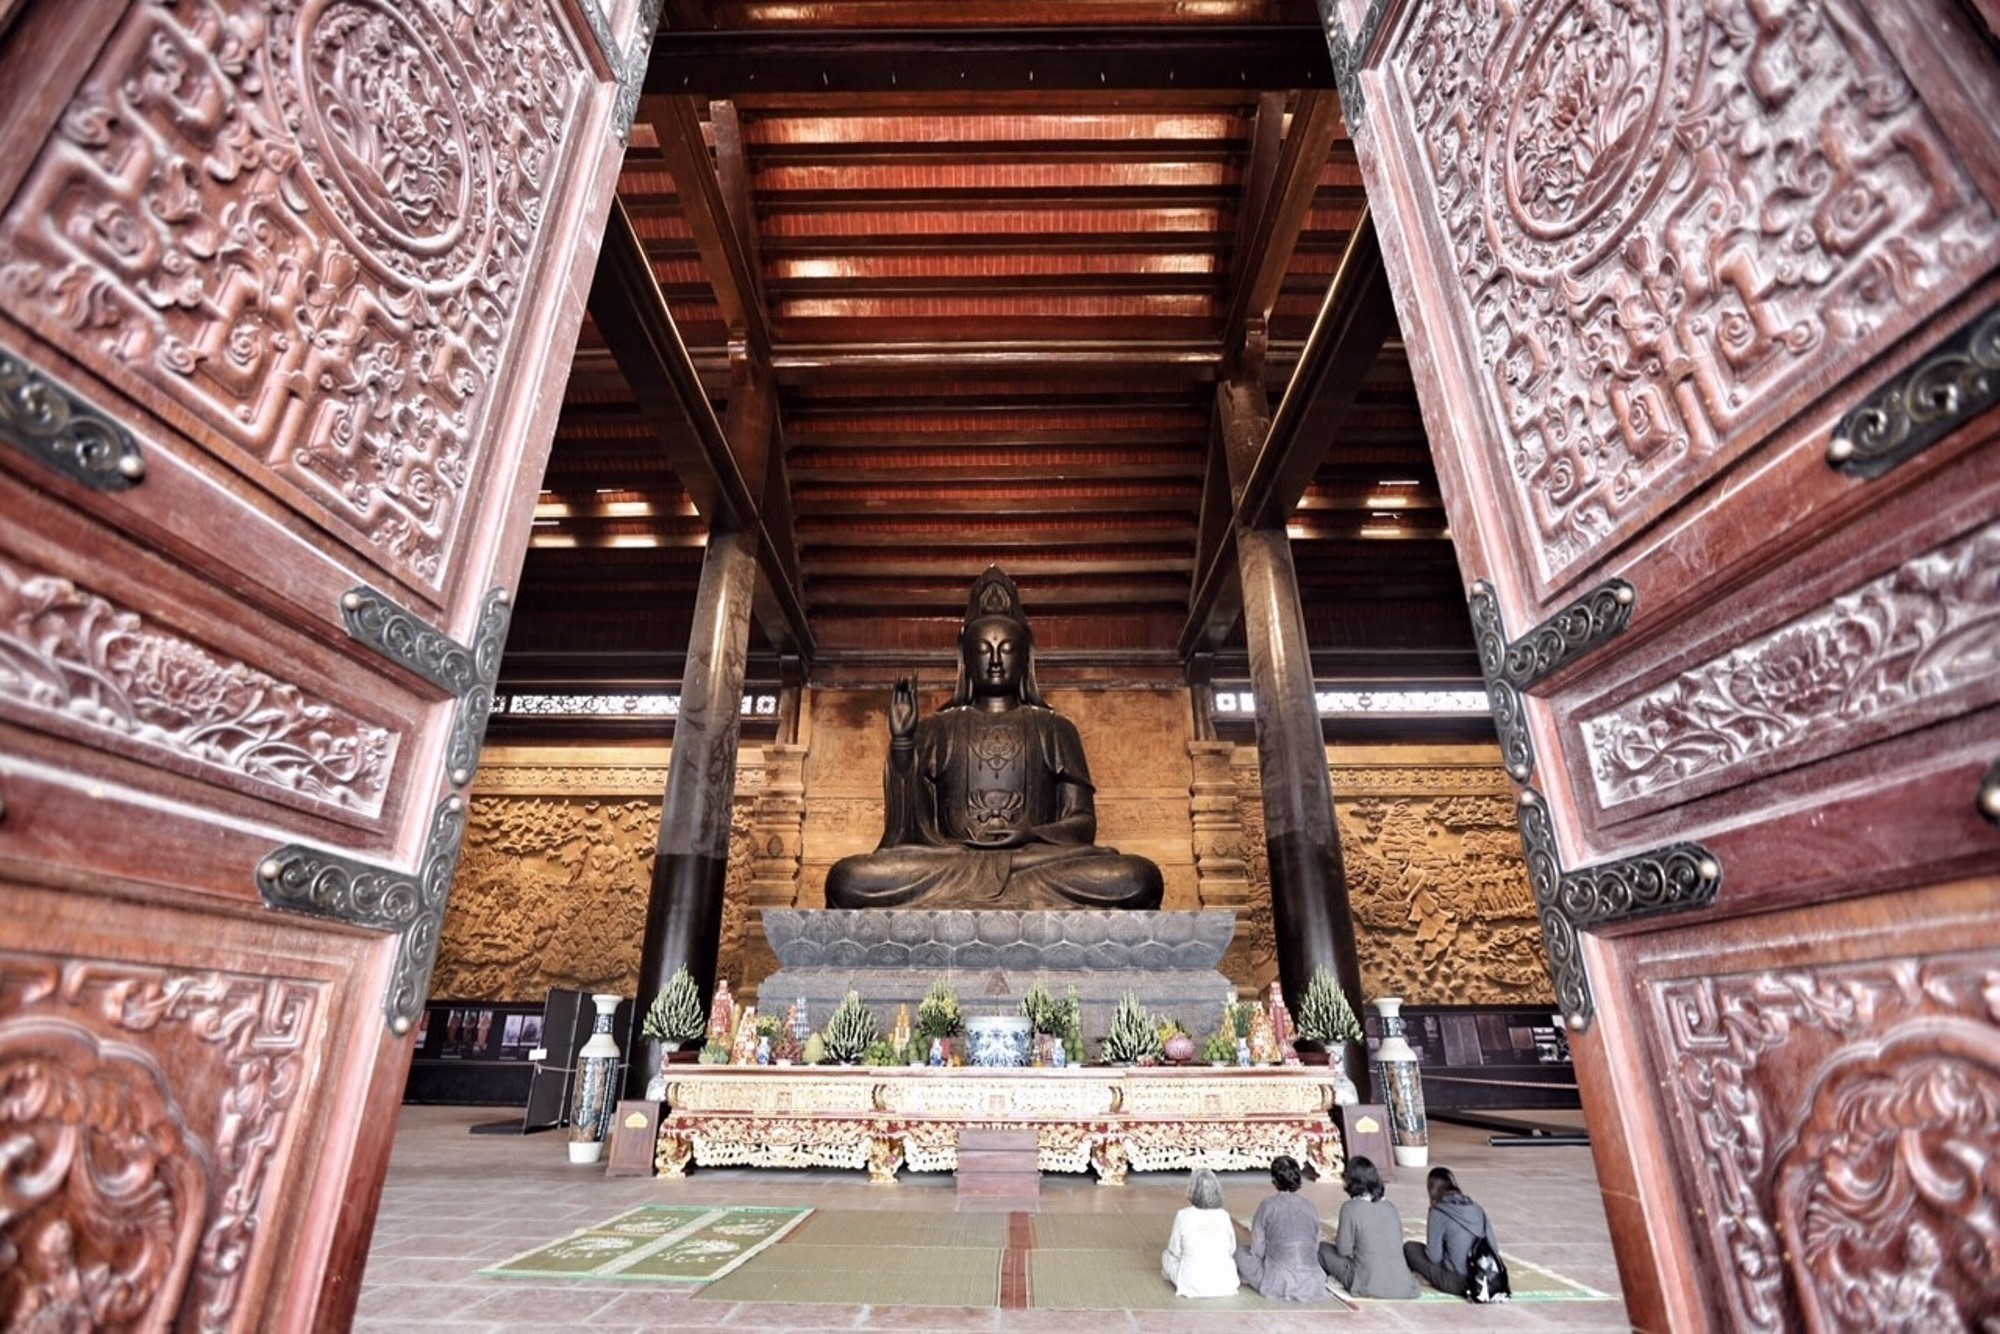 Đại lễ Phật đản Liên hợp quốc 2019 lần thứ 16 diễn ra tại Trung tâm Văn hóa Phật giáo Tam Chúc (huyện Kim Bảng, tỉnh Hà Nam) từ ngày 12 đến 14/5/2019. (Ảnh: TTXVN)